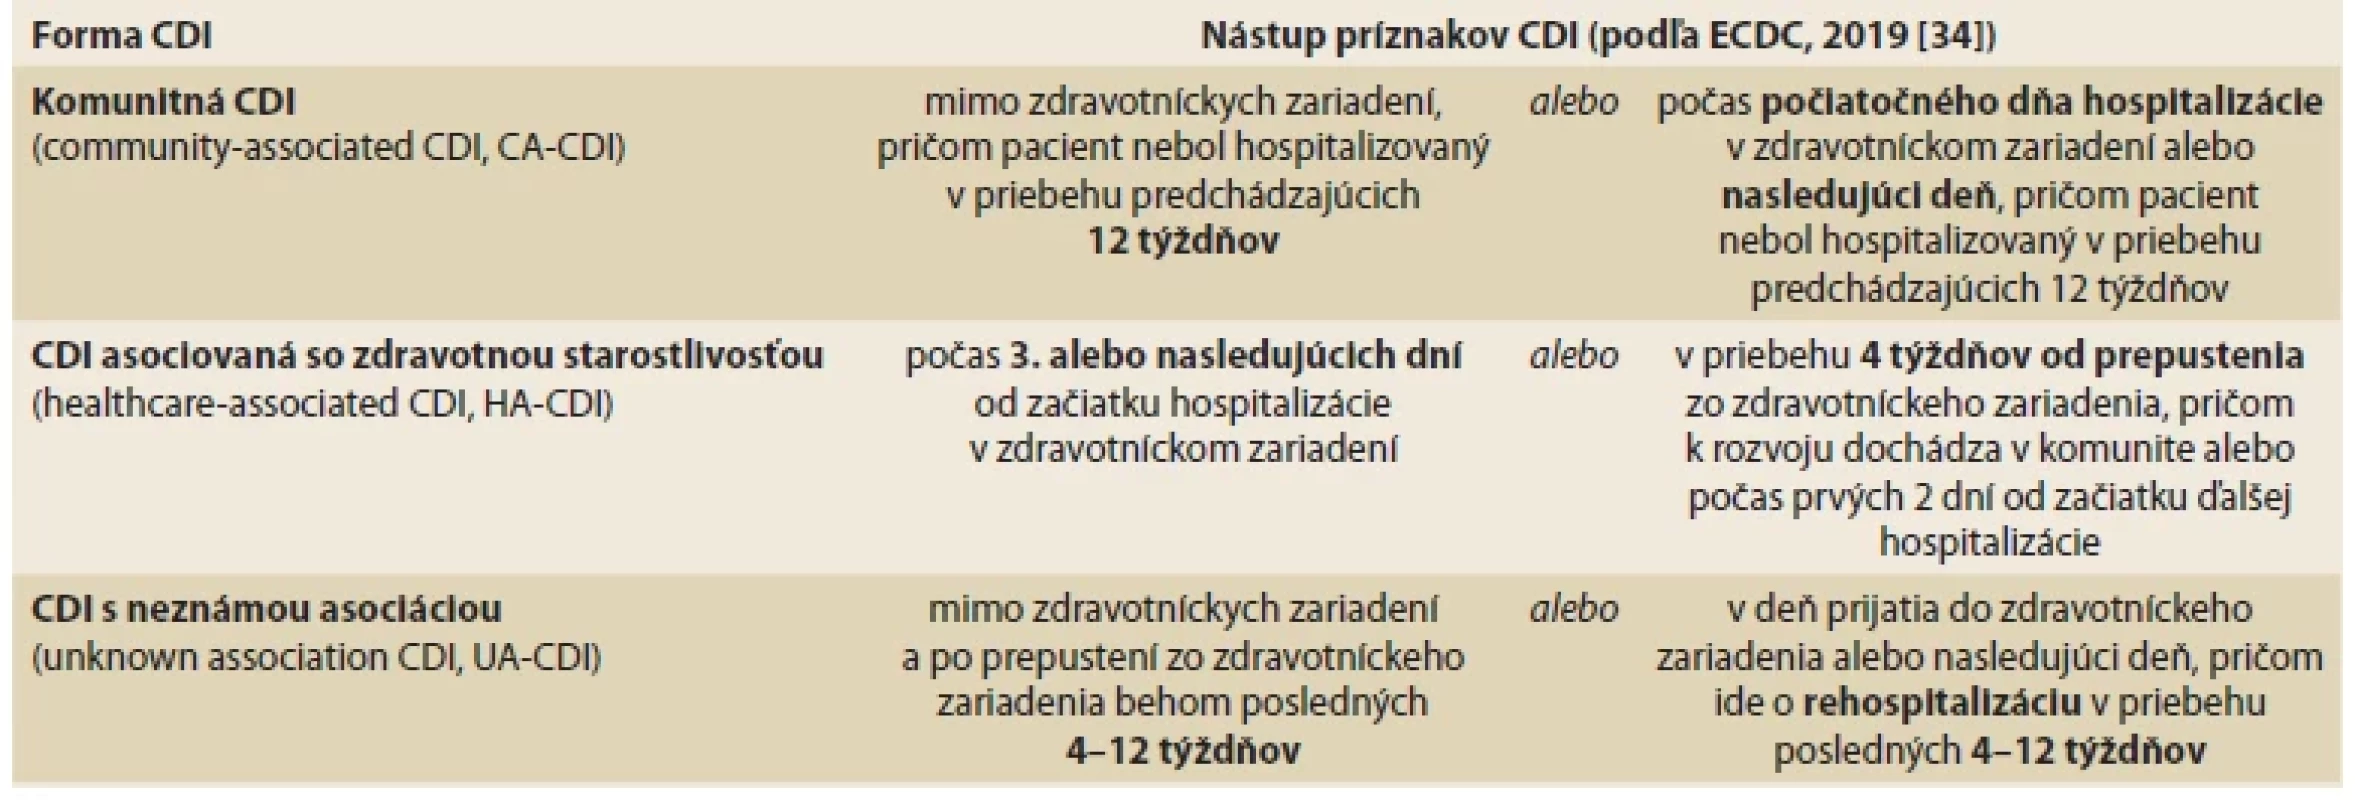 Charakteristiky prípadov CDI v závislosti od miesta a času nástupu príznakov infekcie. <br> 
Tab. 1. Characteristics of CDI cases based on location and time of onset of symptoms.